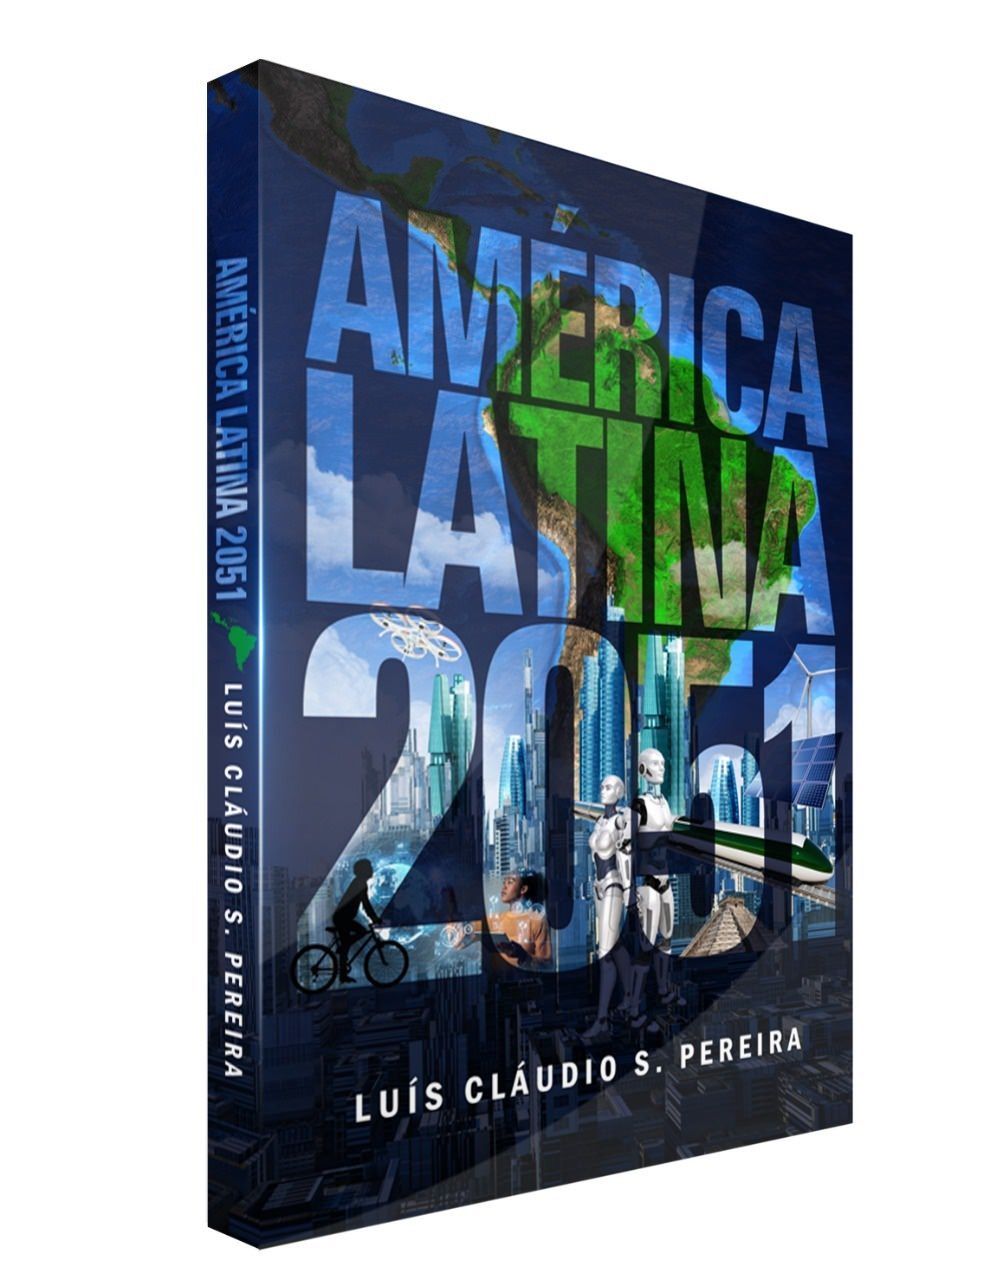 ספר "אמריקה הלטינית 2051" מאת לואיס קלאודיו ס. אגס, כיסוי. גילוי.